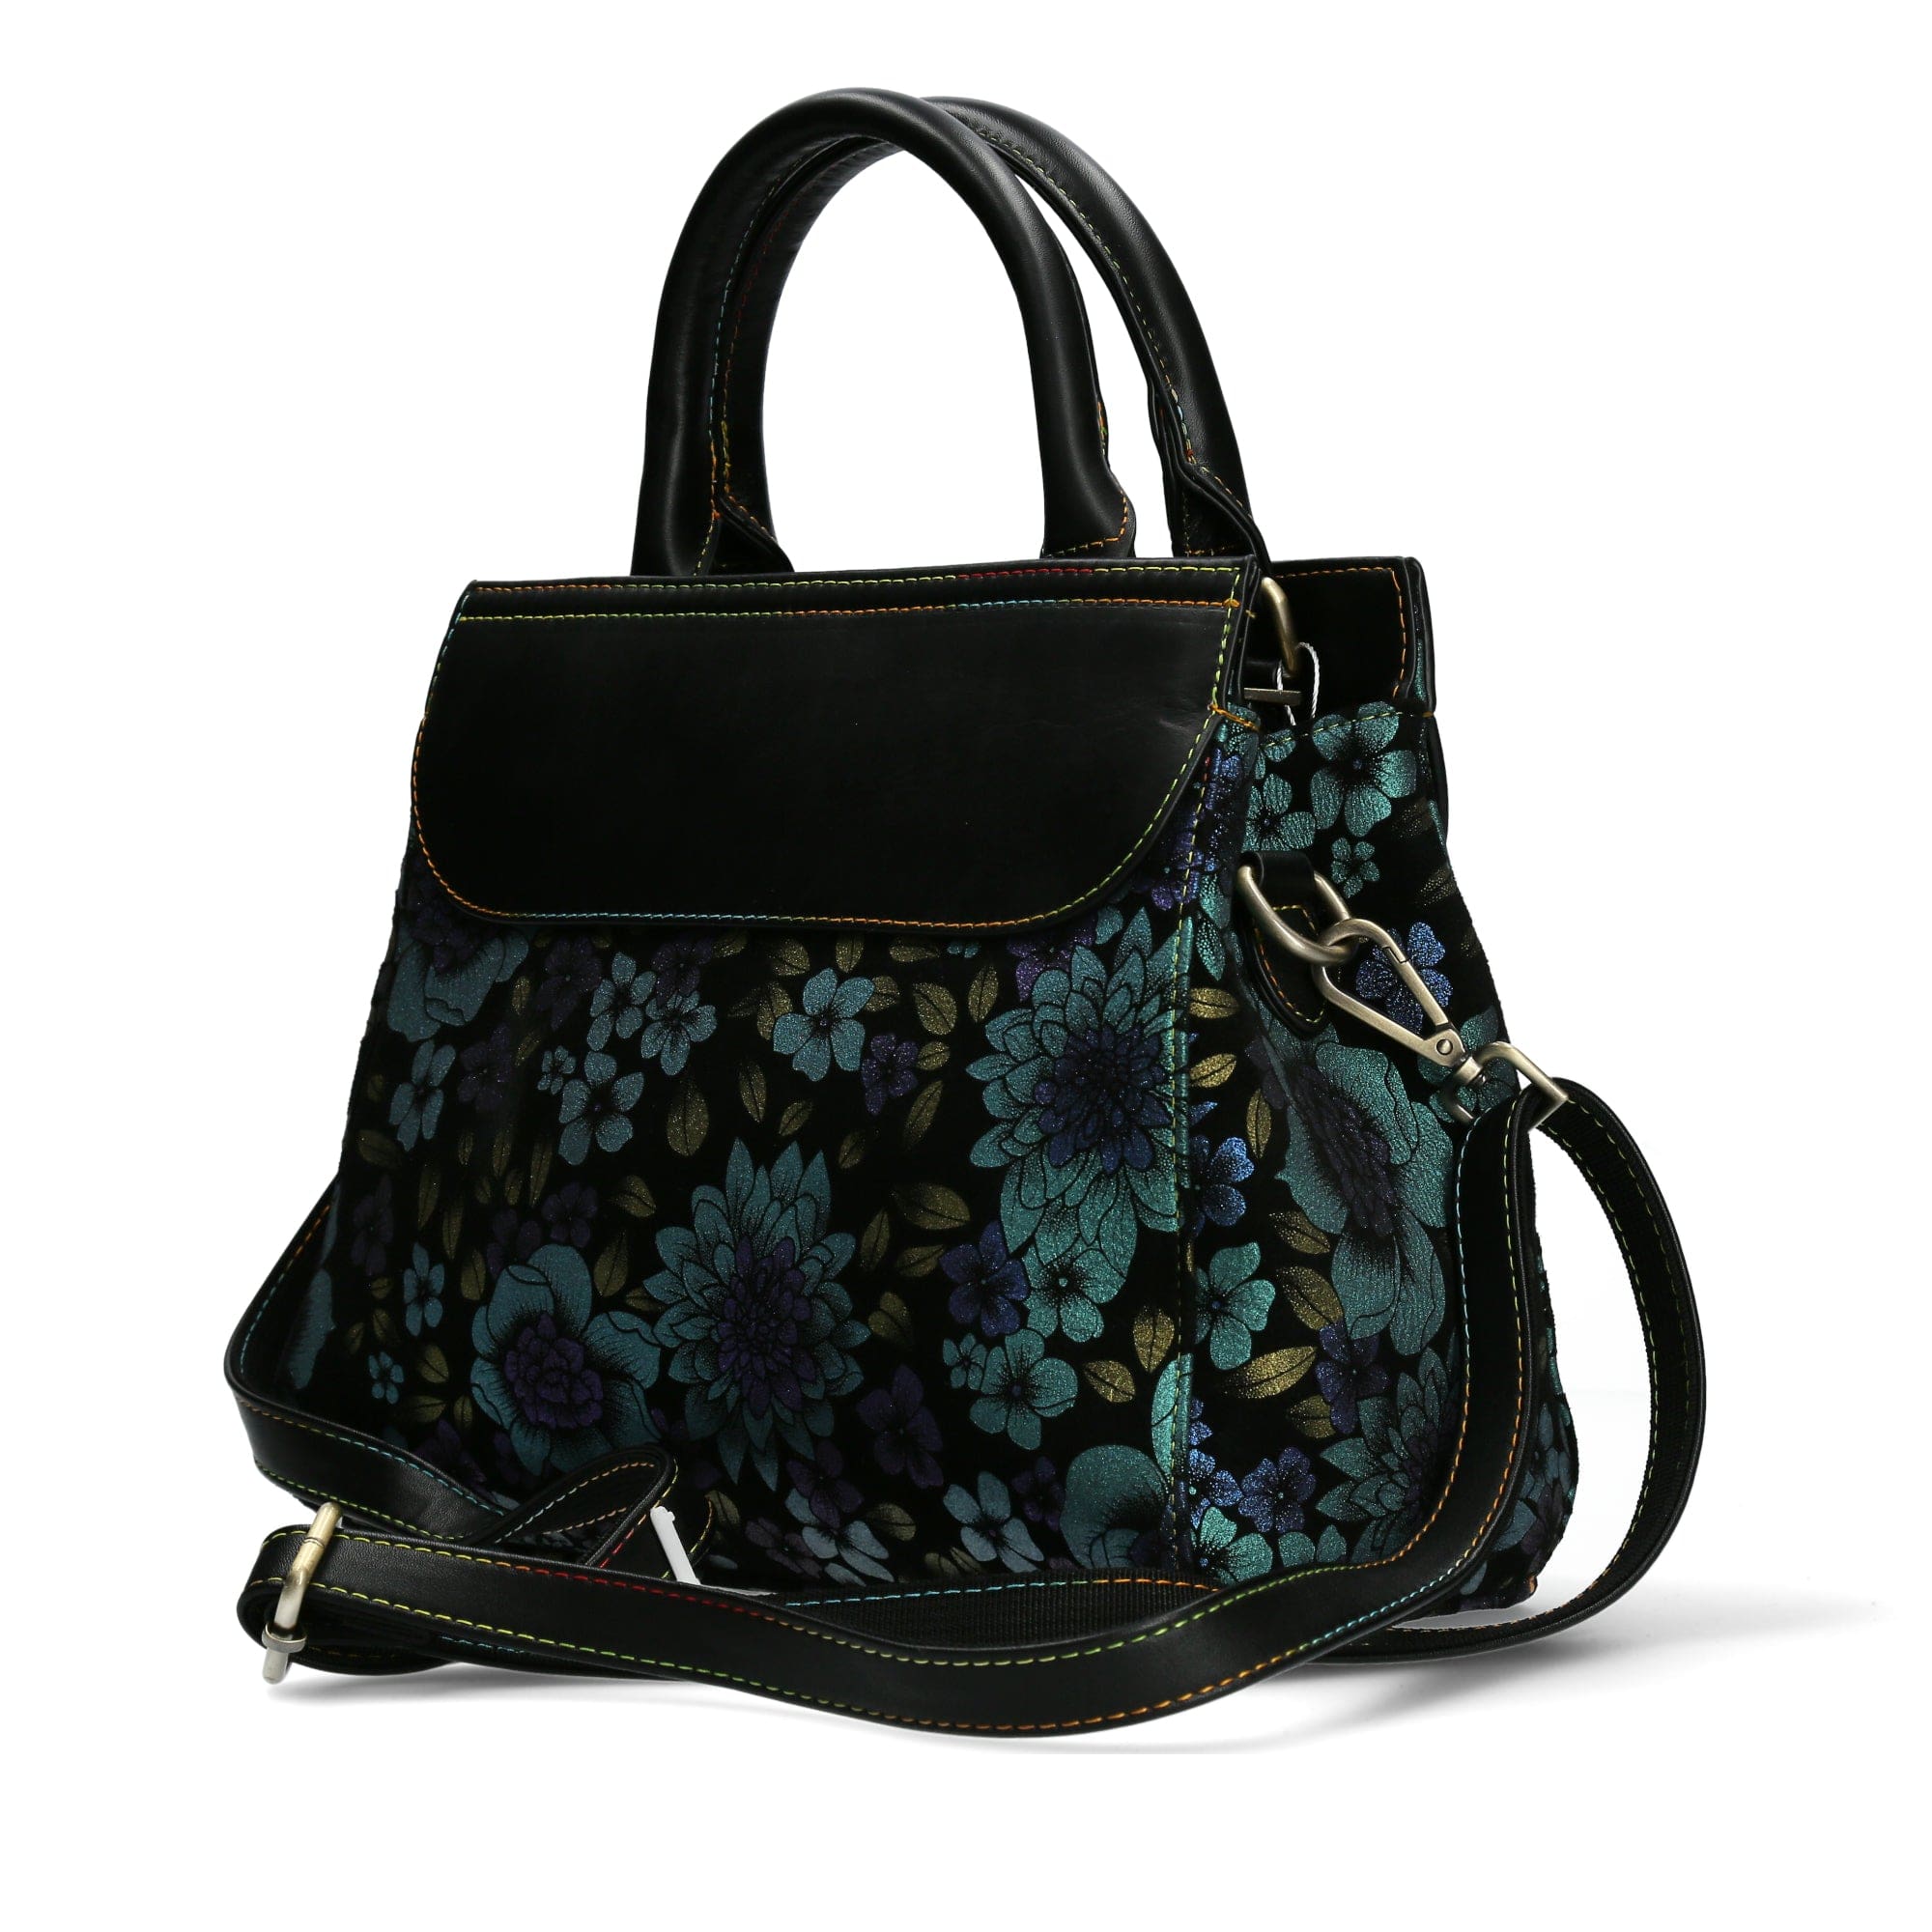 ANTARA BAG 05 - Turquoise - Bag